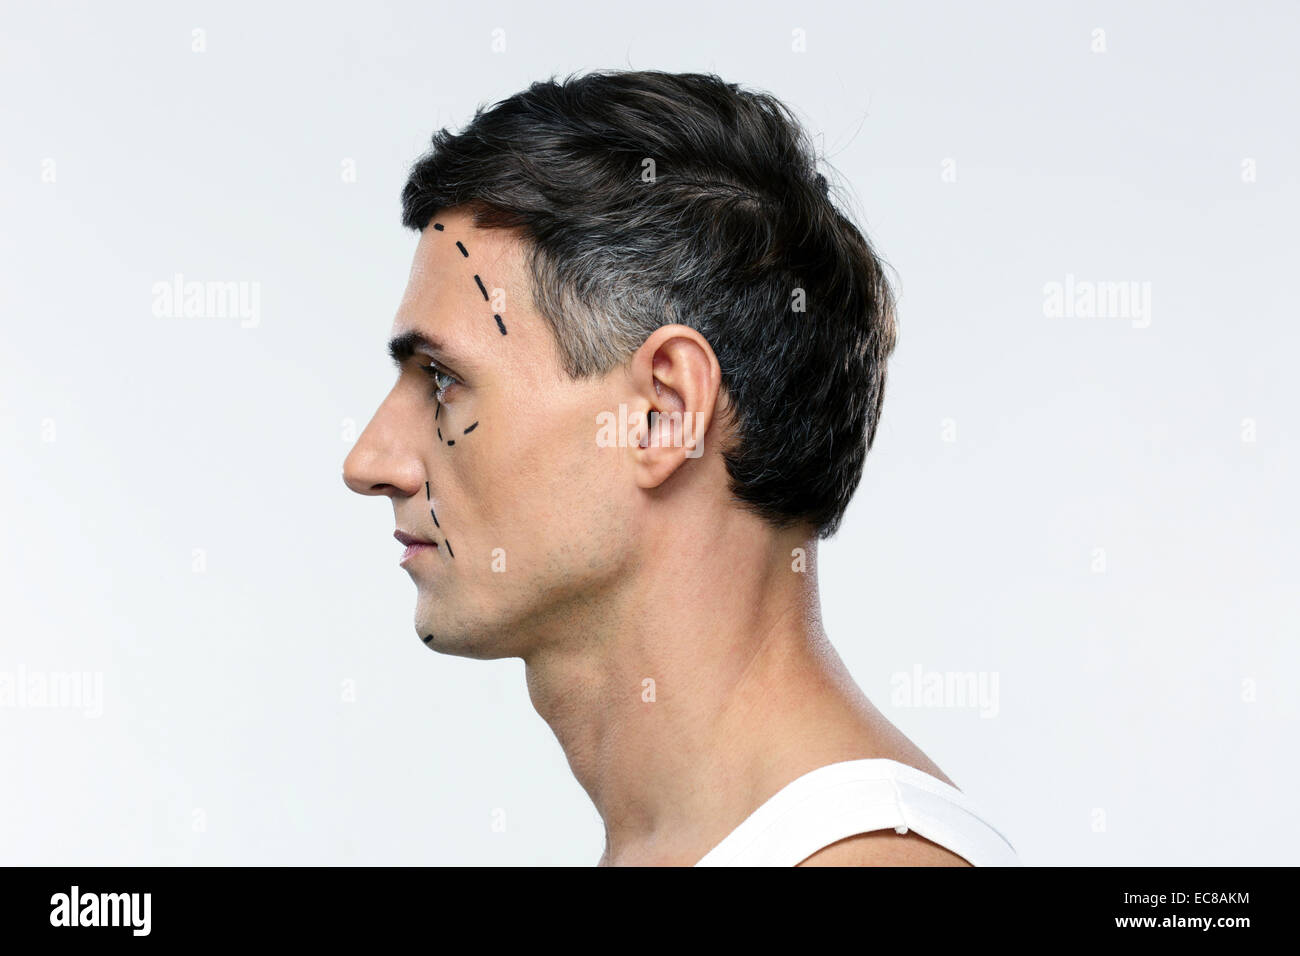 Vue latérale du portrait d'un homme marqué par des lignes pour la chirurgie en plastique Banque D'Images